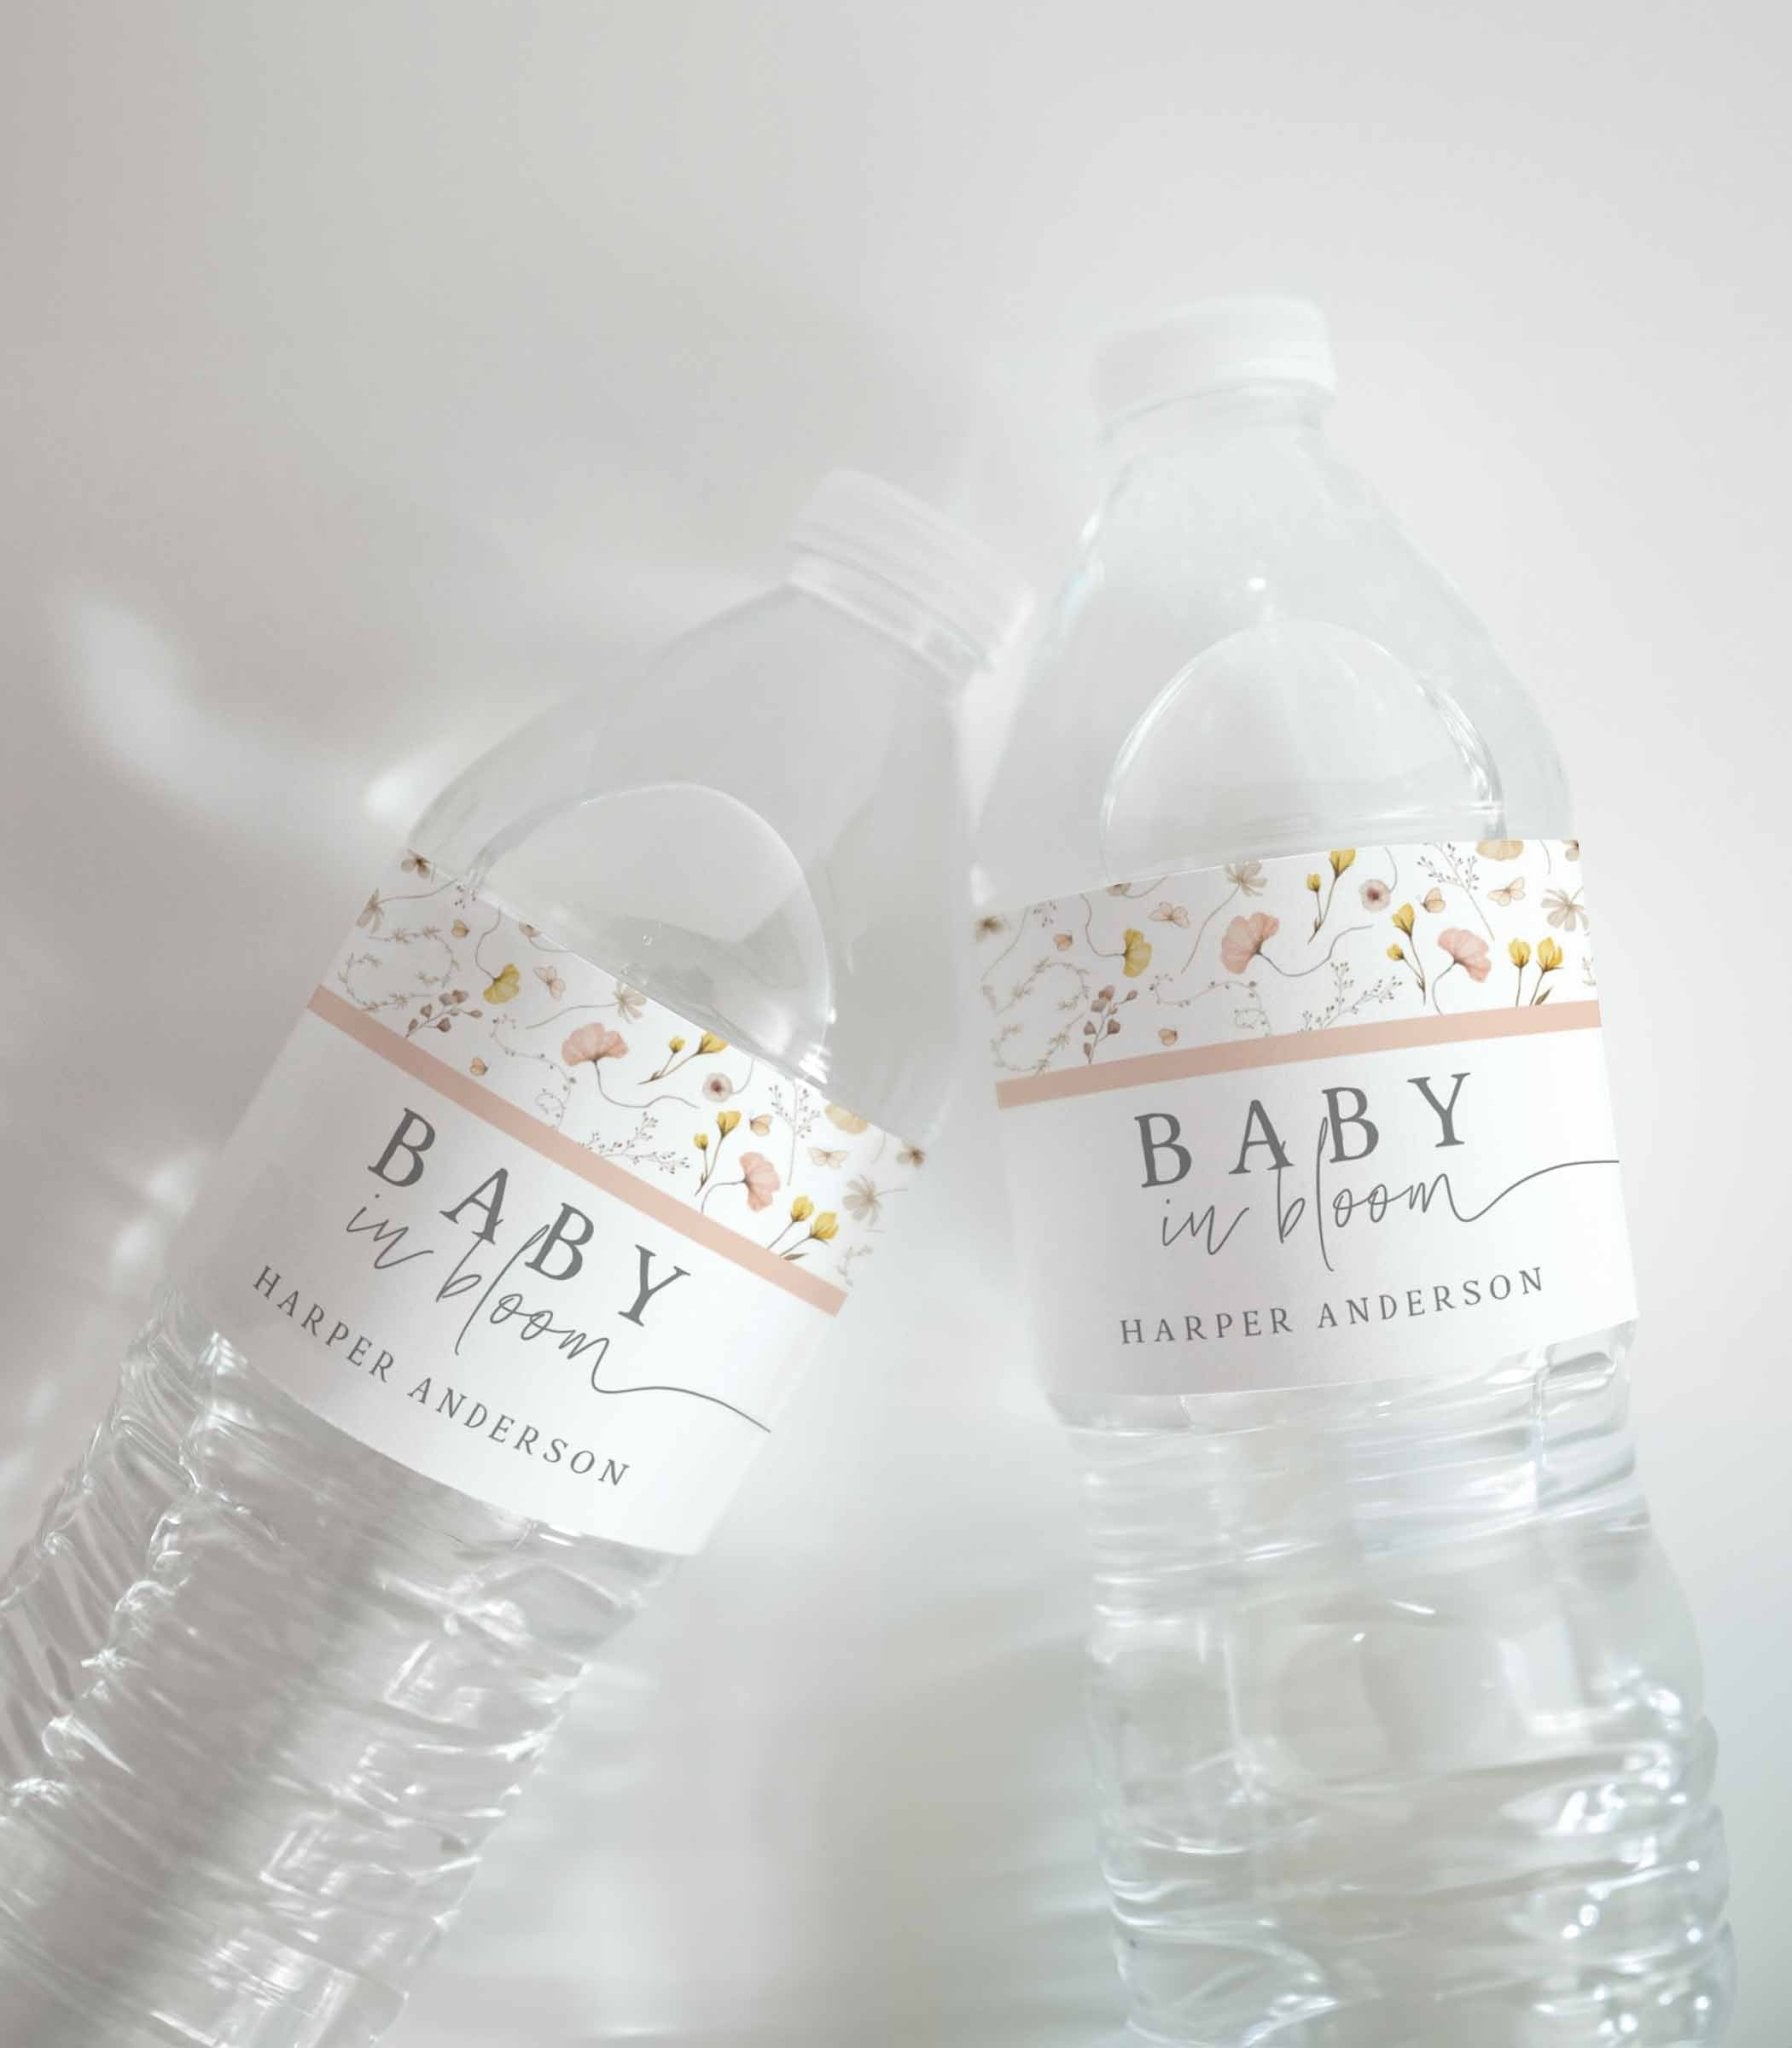 Editable Wildflower Water Bottle Label Template - High Peaks Studios